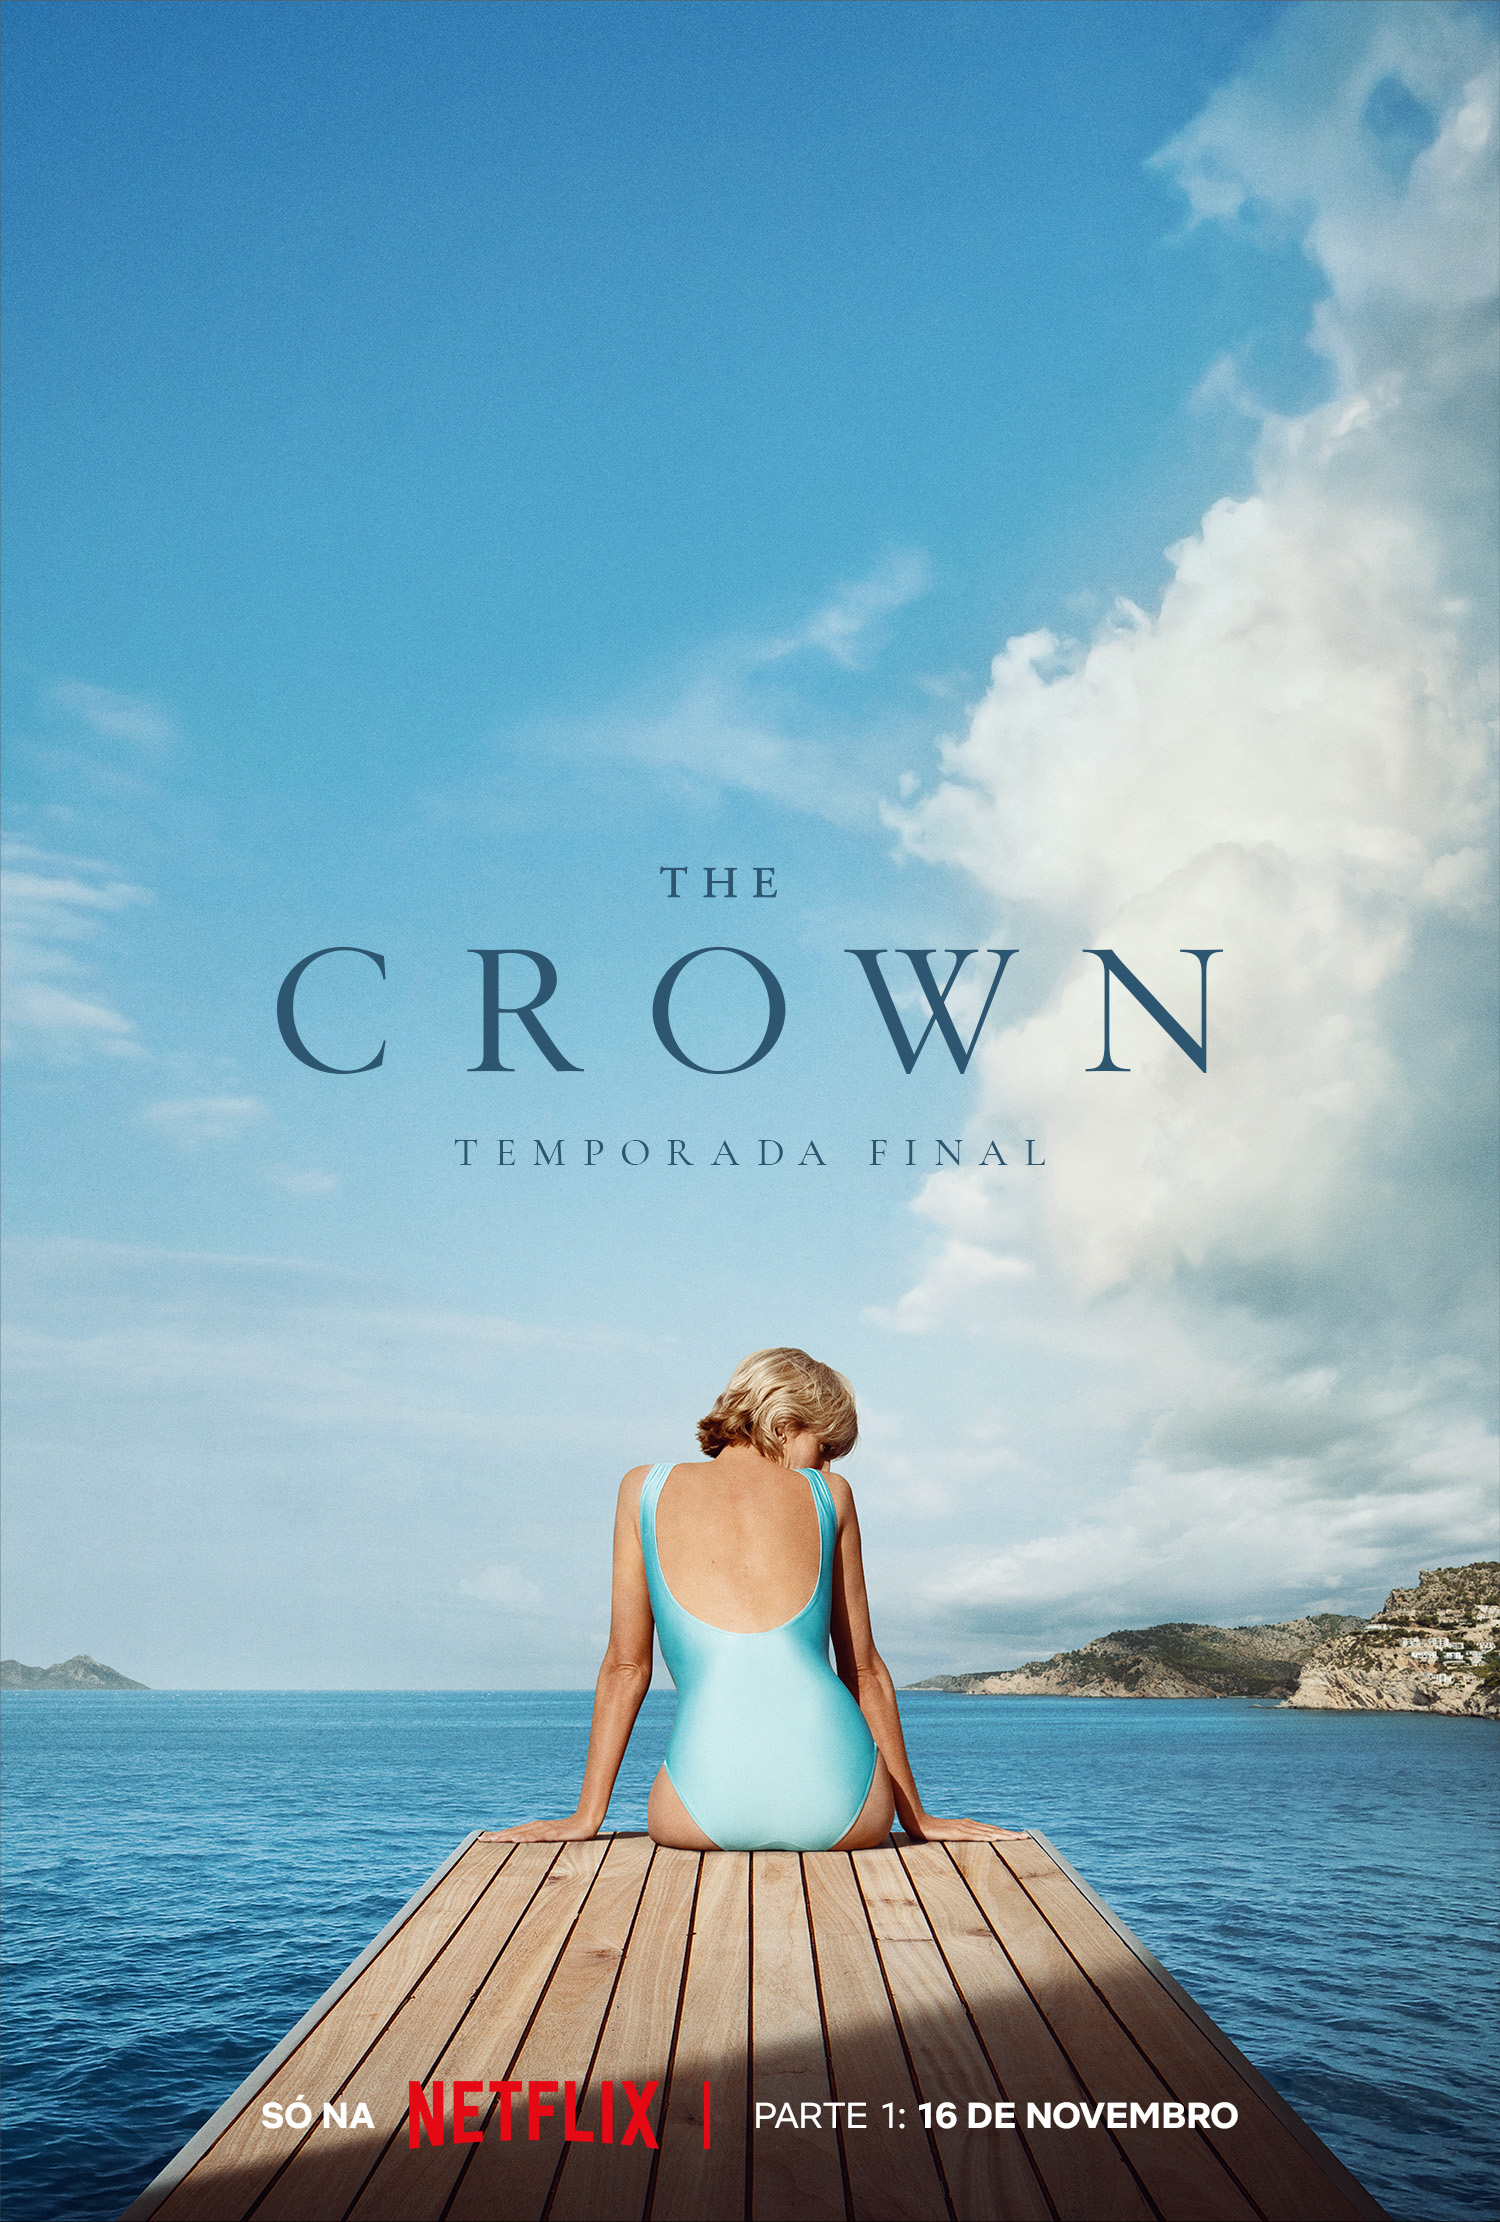 Netflix divulga pôster da primeira parte da última temporada de "The Crown" (Foto: Divulgação/Netflix)